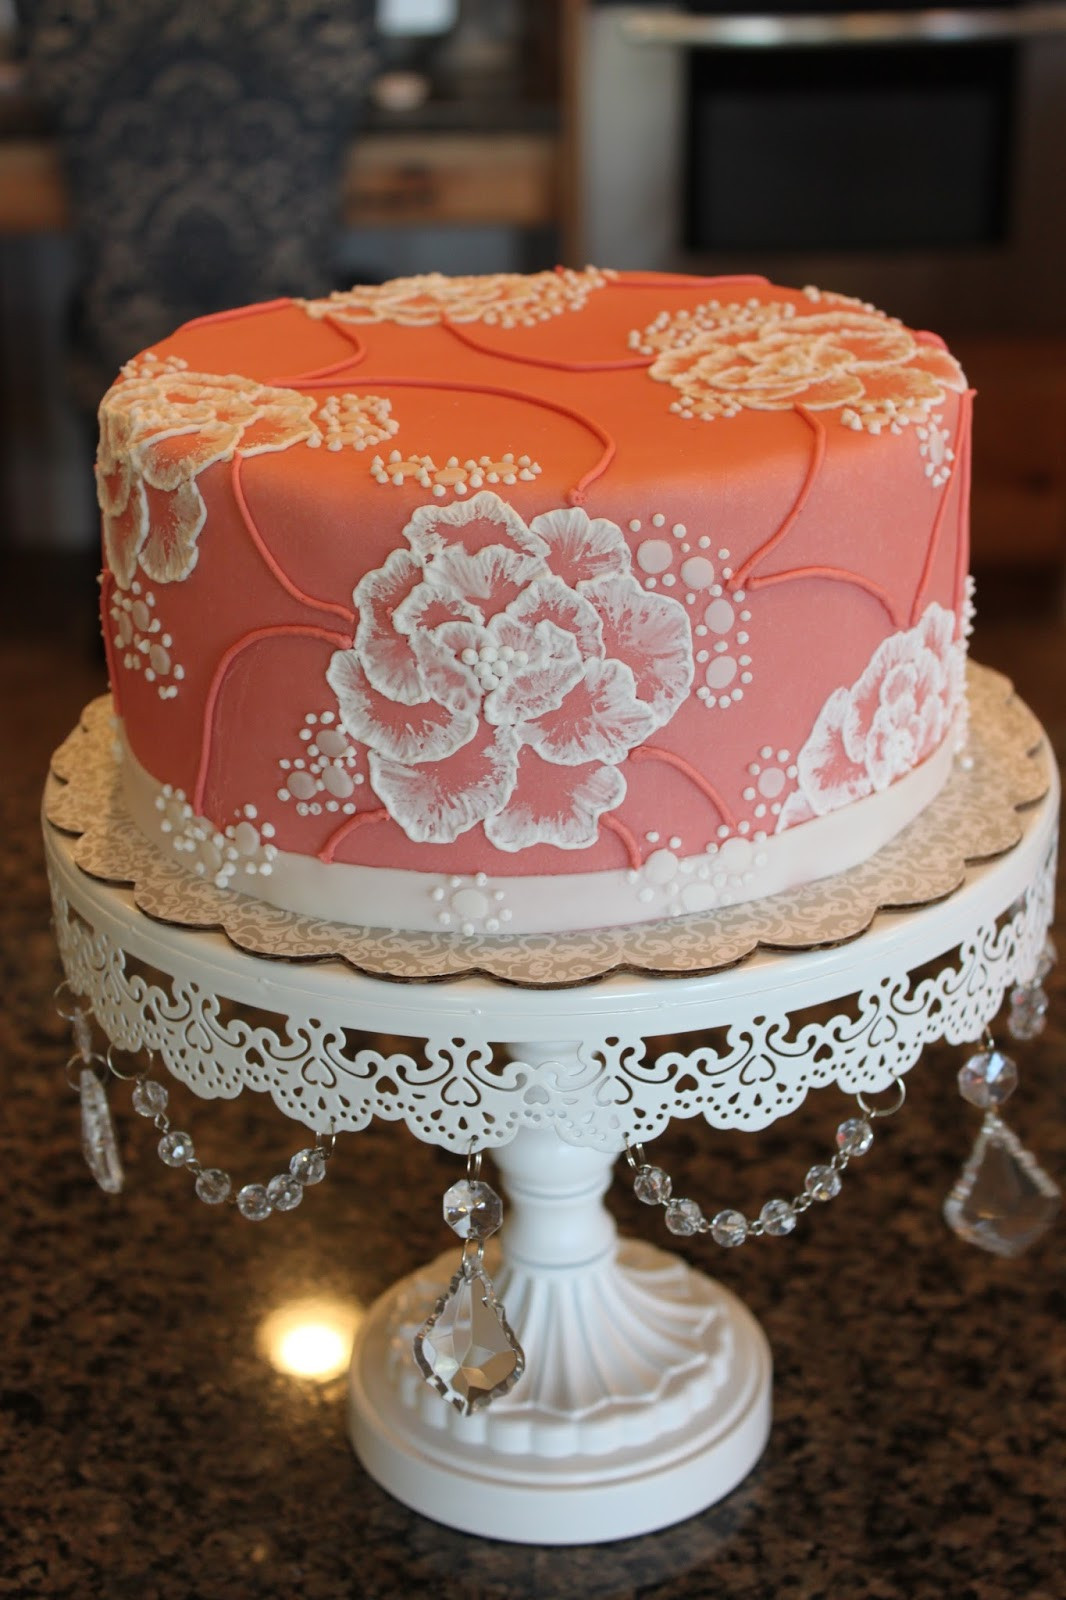 Elegant Birthday Cake
 Drake’s Cakes Fancy Elegant Birthday Cake